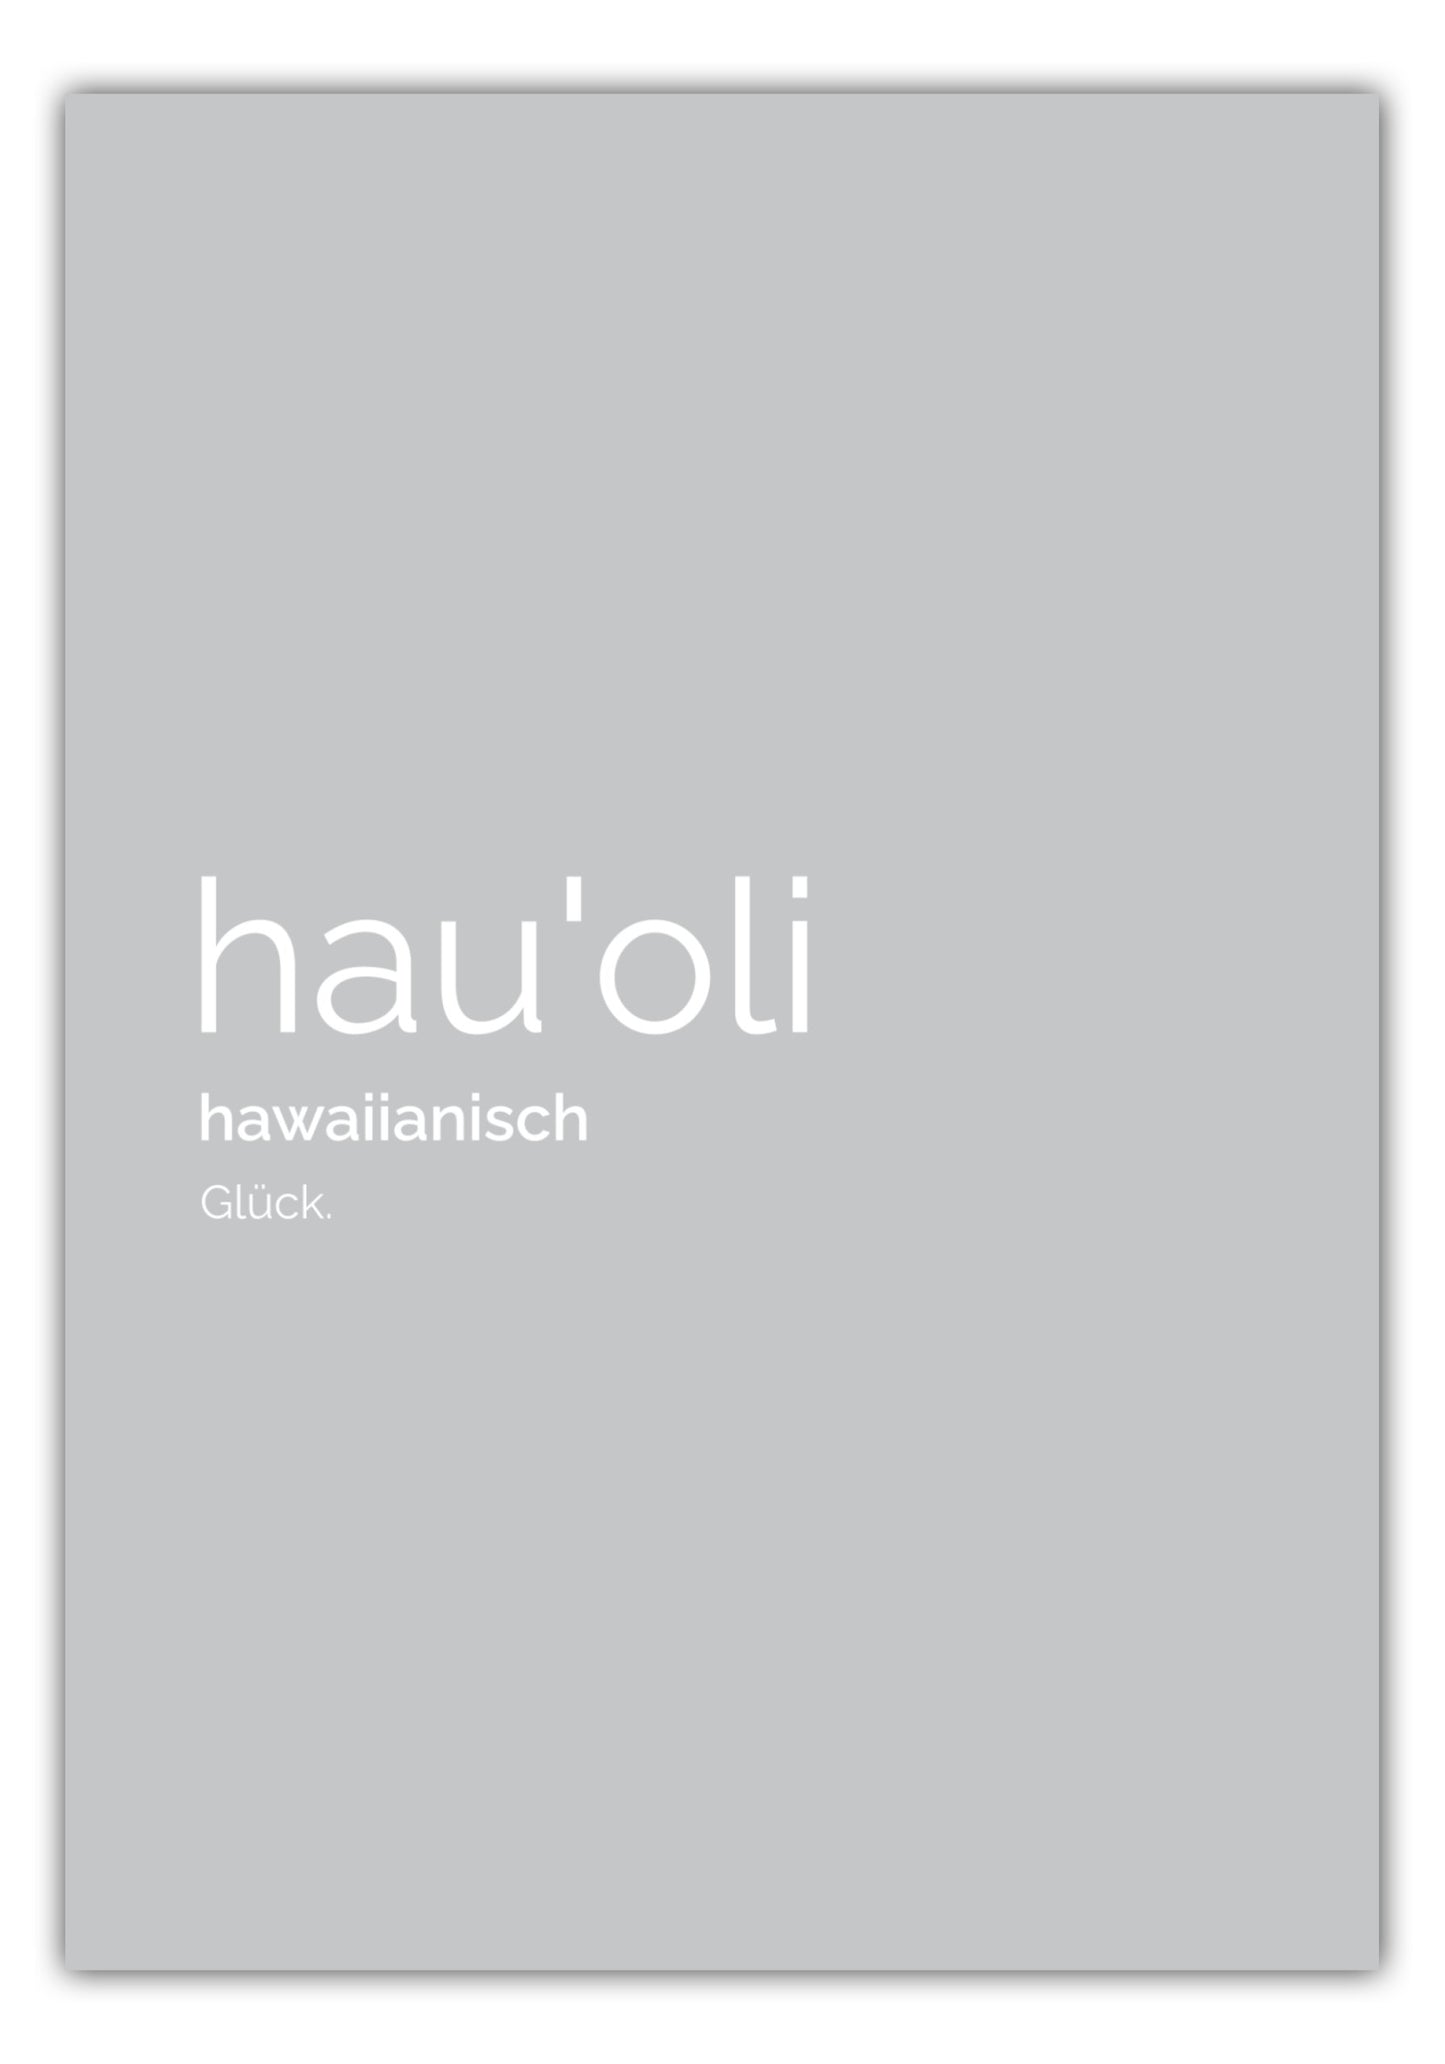 Poster Hauoli (Hawaiianisch: Glück)